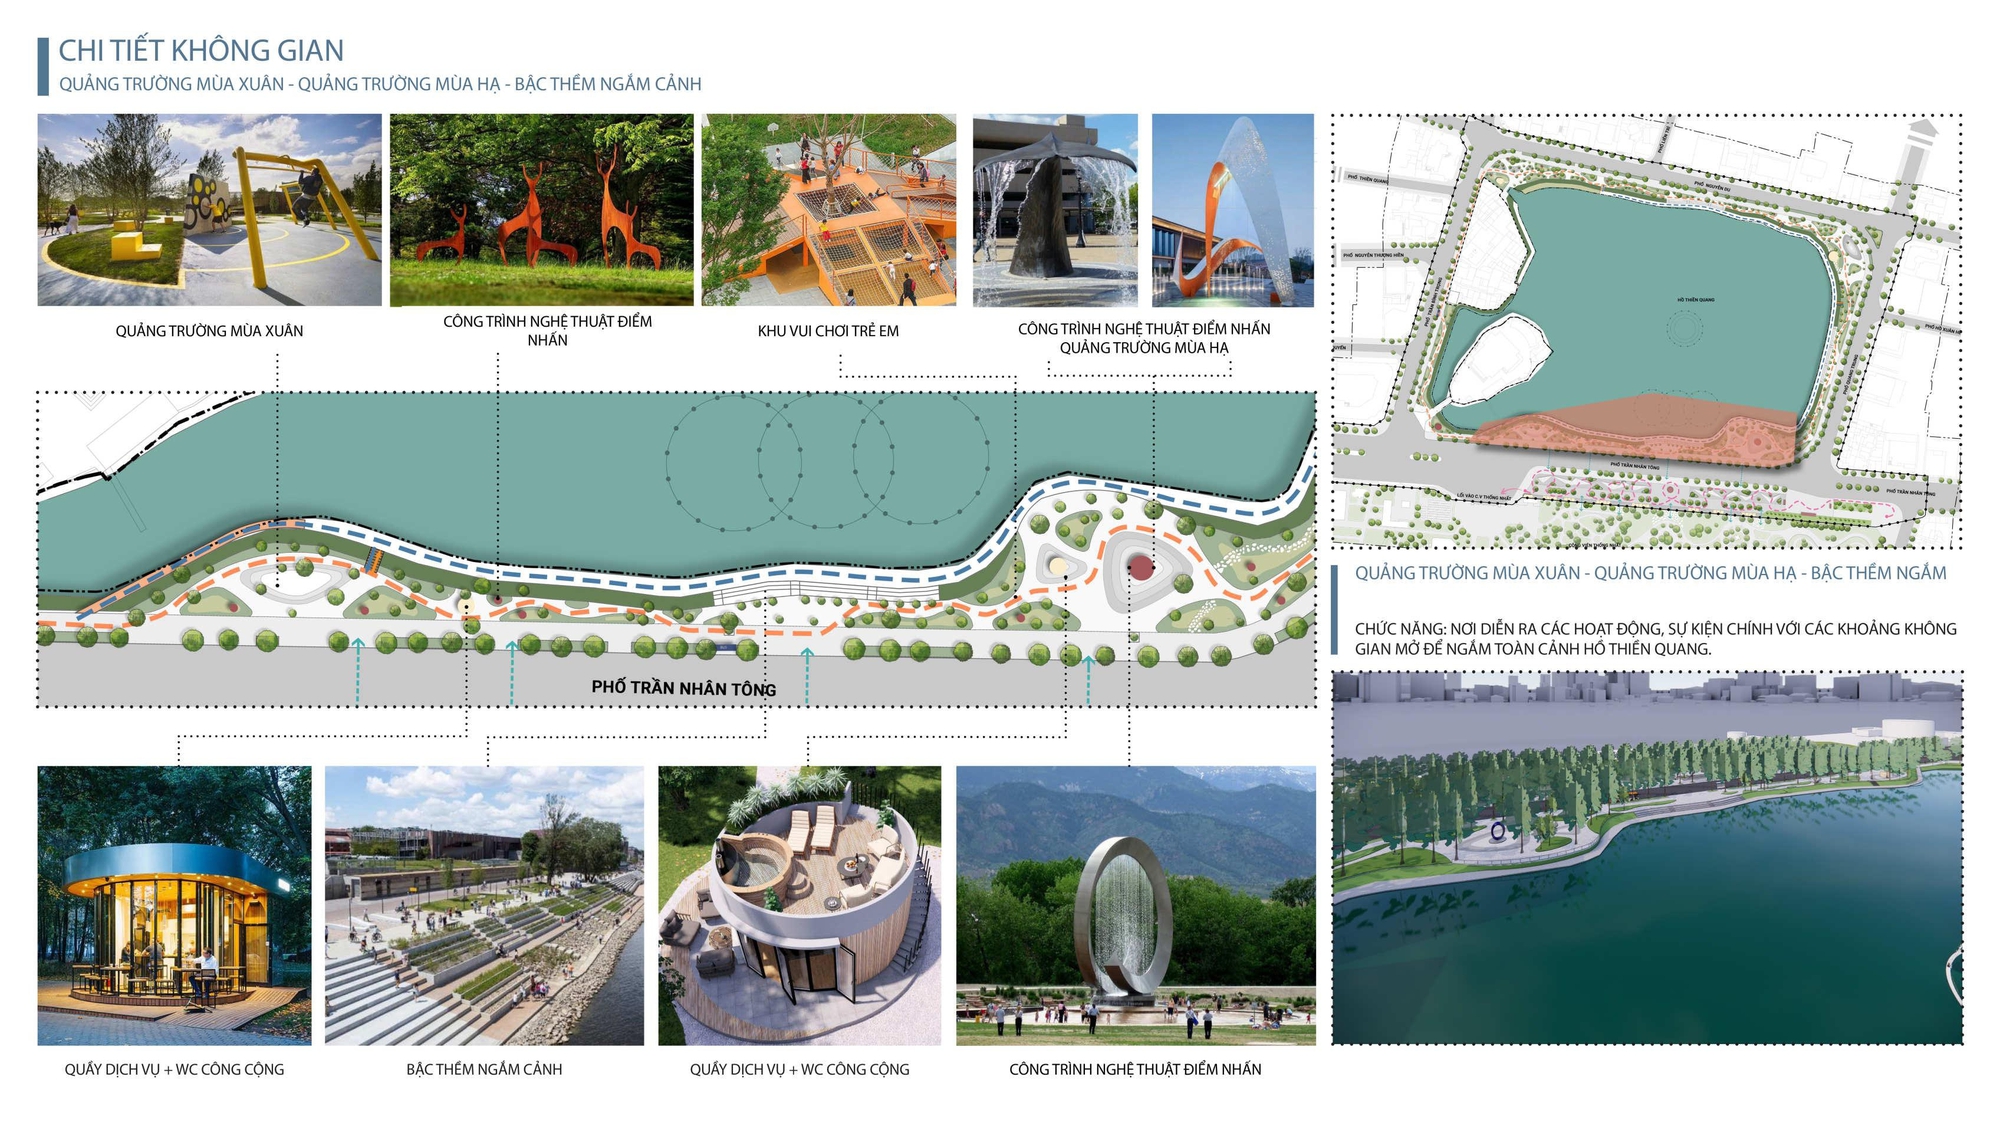 Ngắm diện mạo 5 quảng trường đang được đề xuất xây dựng quanh hồ Thiền Quang - Ảnh 4.